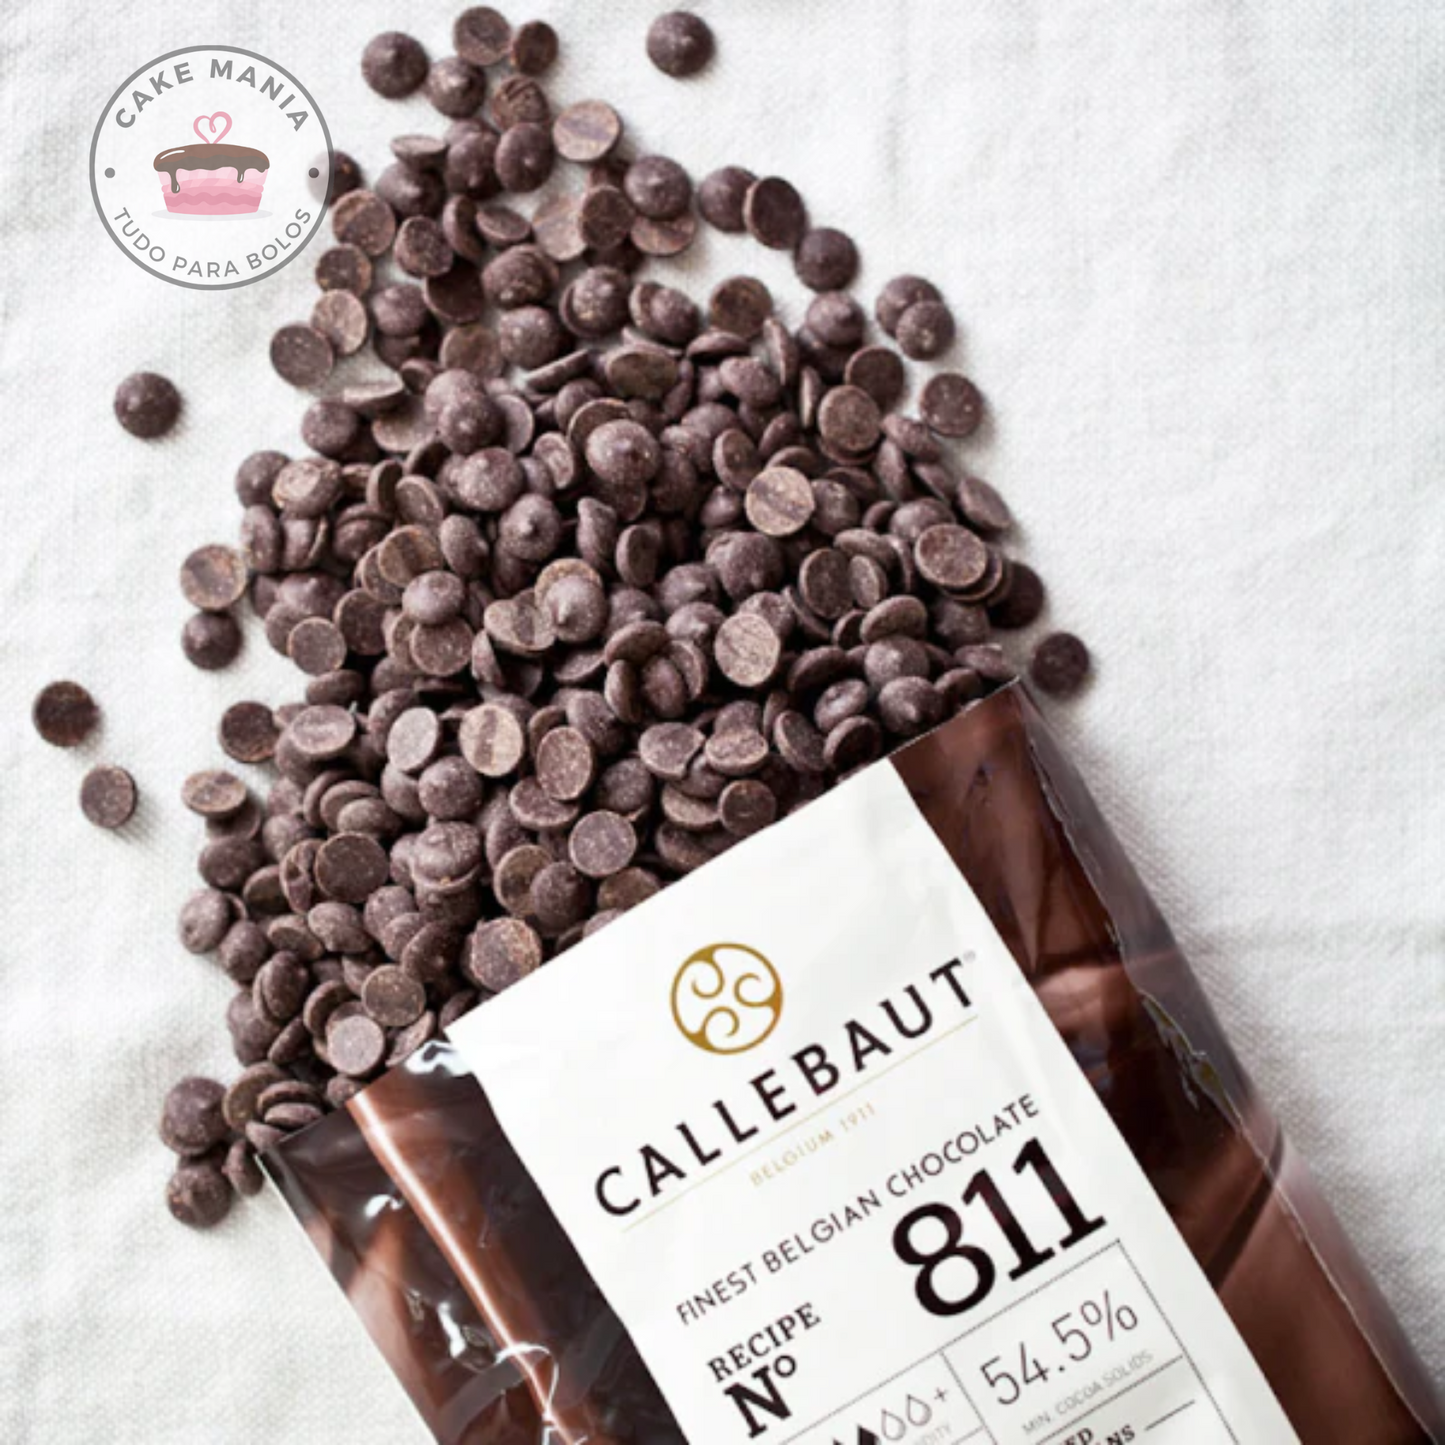 Chocolate 811 Callebaut Negro 54% 1kg